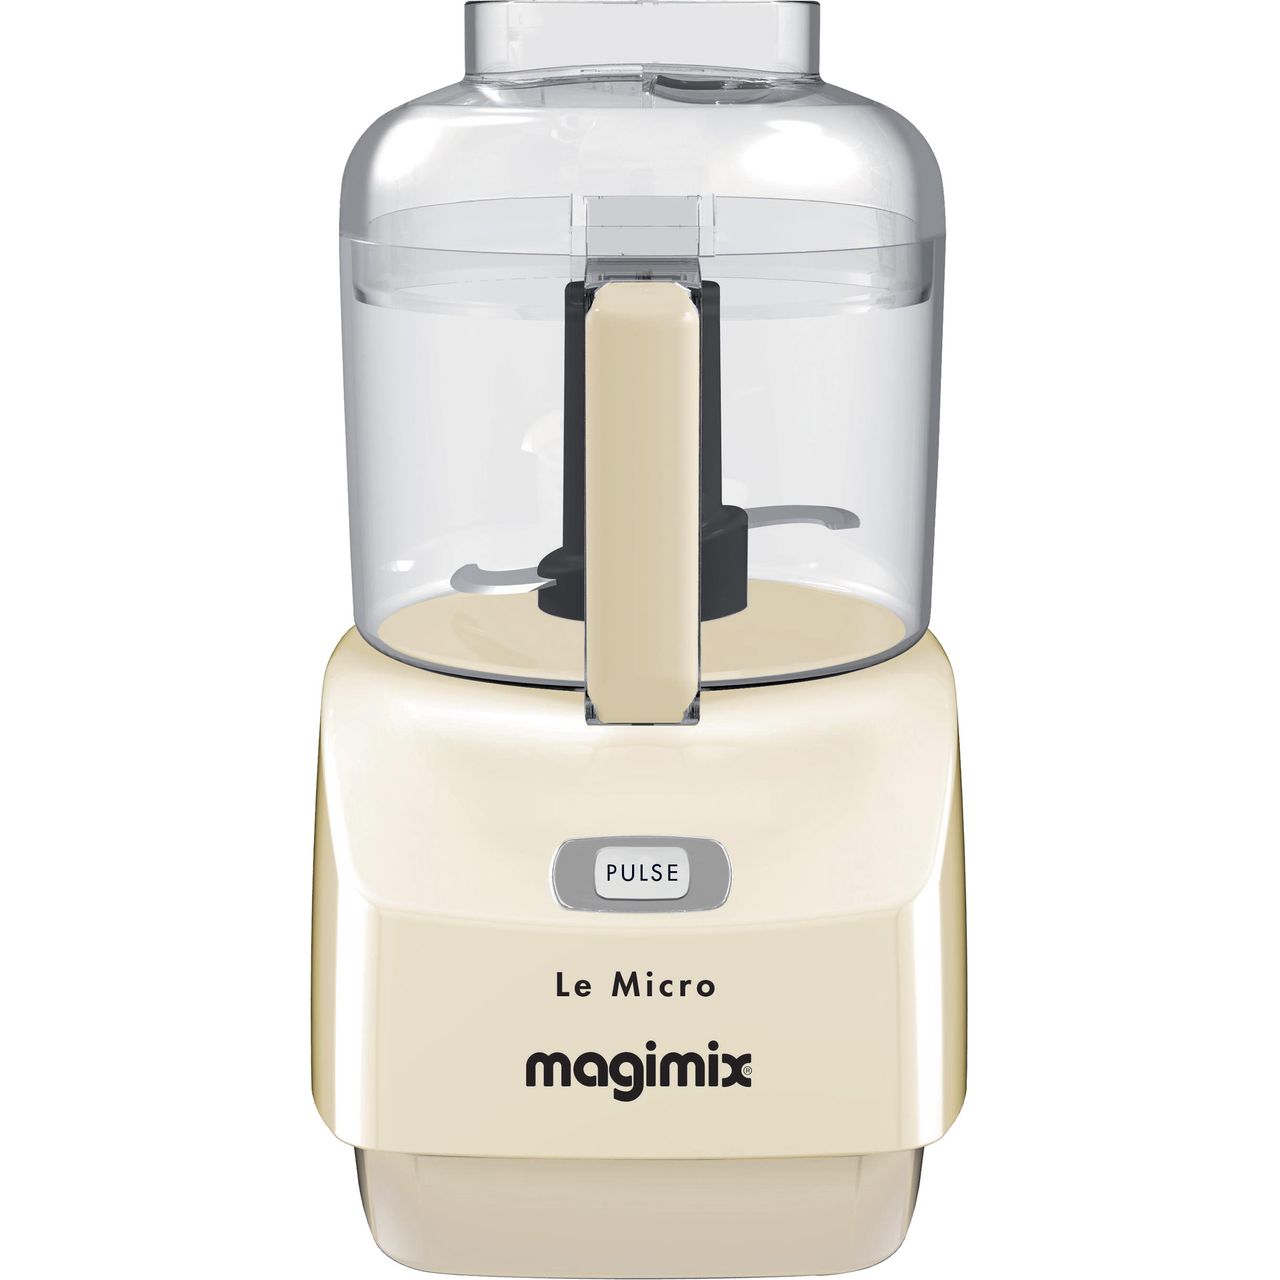 Magimix Le Micro 18112 290 Watt Mini Food Processor Review